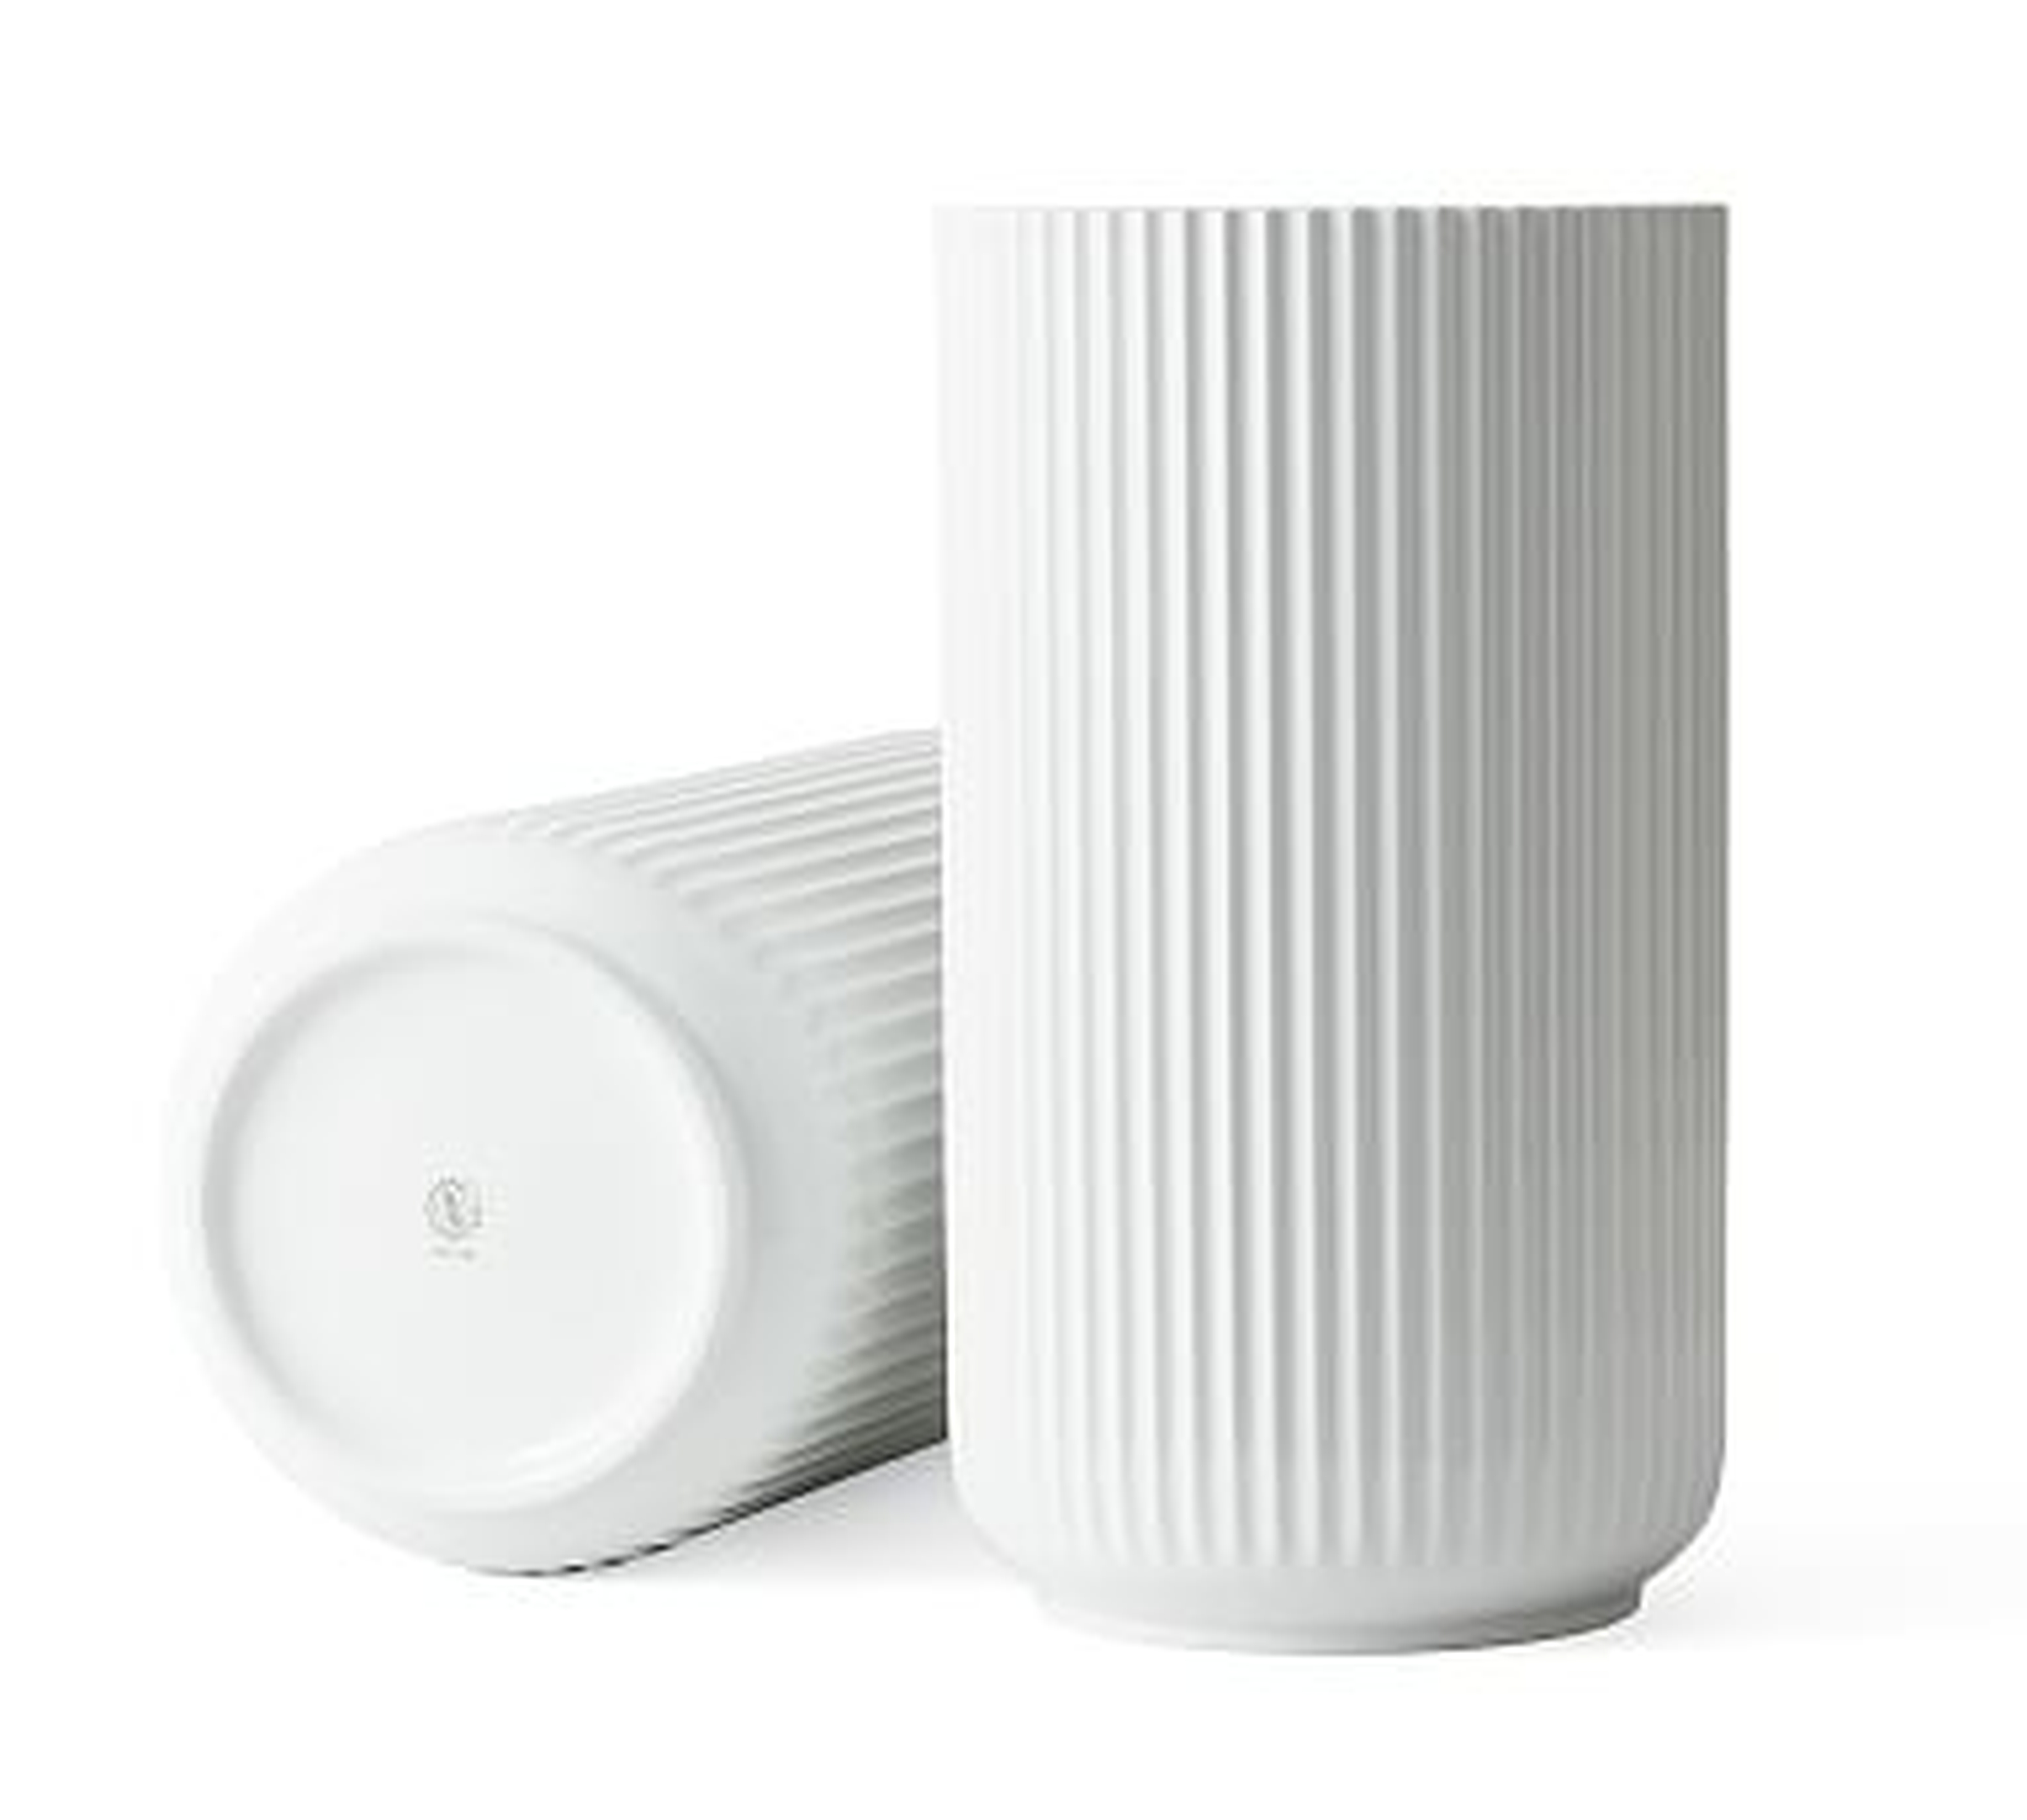 Lyngby White Porcelain Vases, XL - Pottery Barn